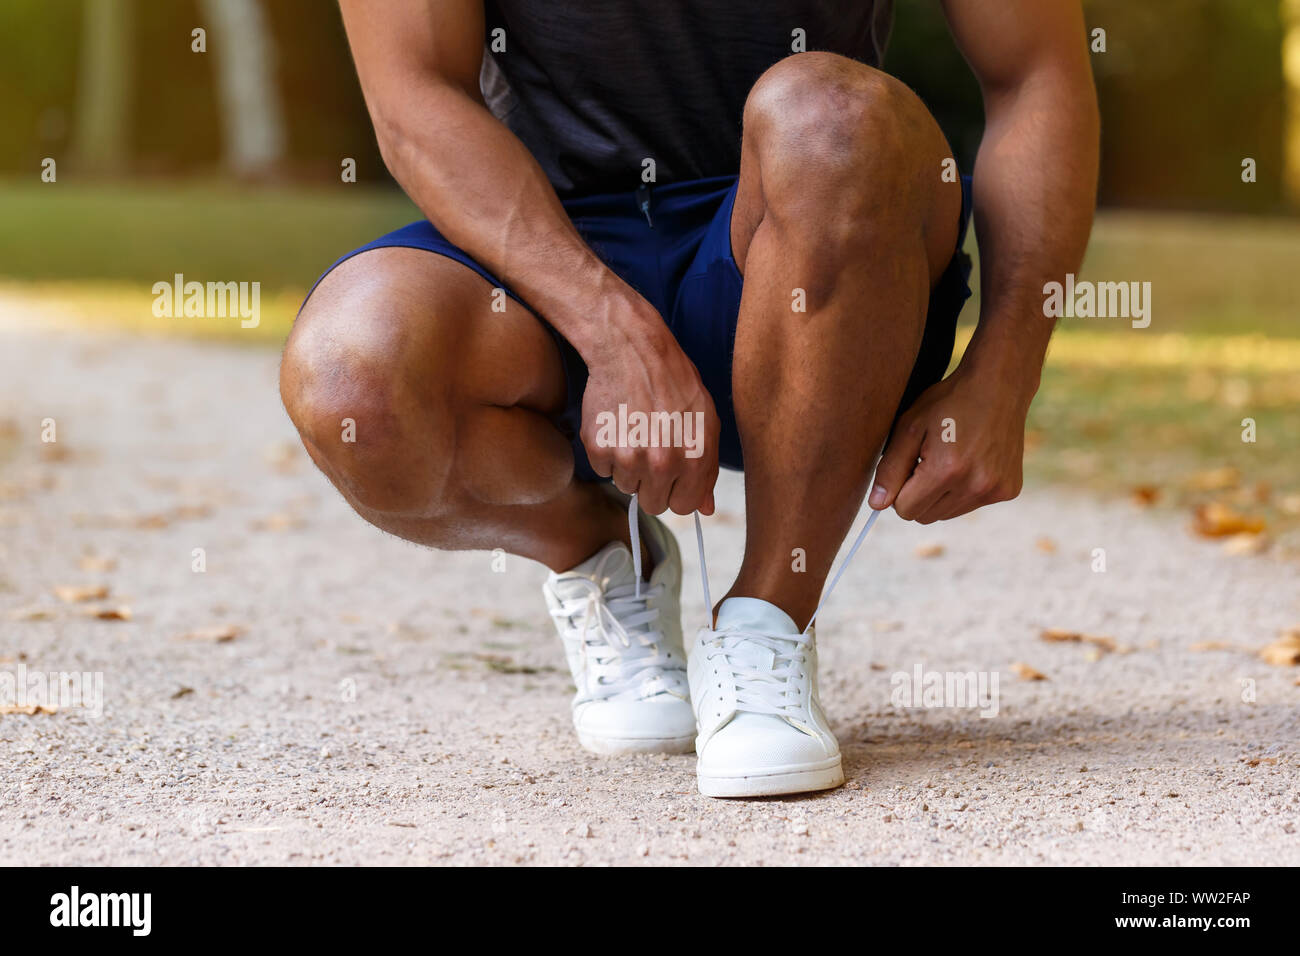 Laccio di legatura scarpe passalacci runner giovane uomo pronto preparazione inizia a correre jogging sport fitness training outdoor Foto Stock